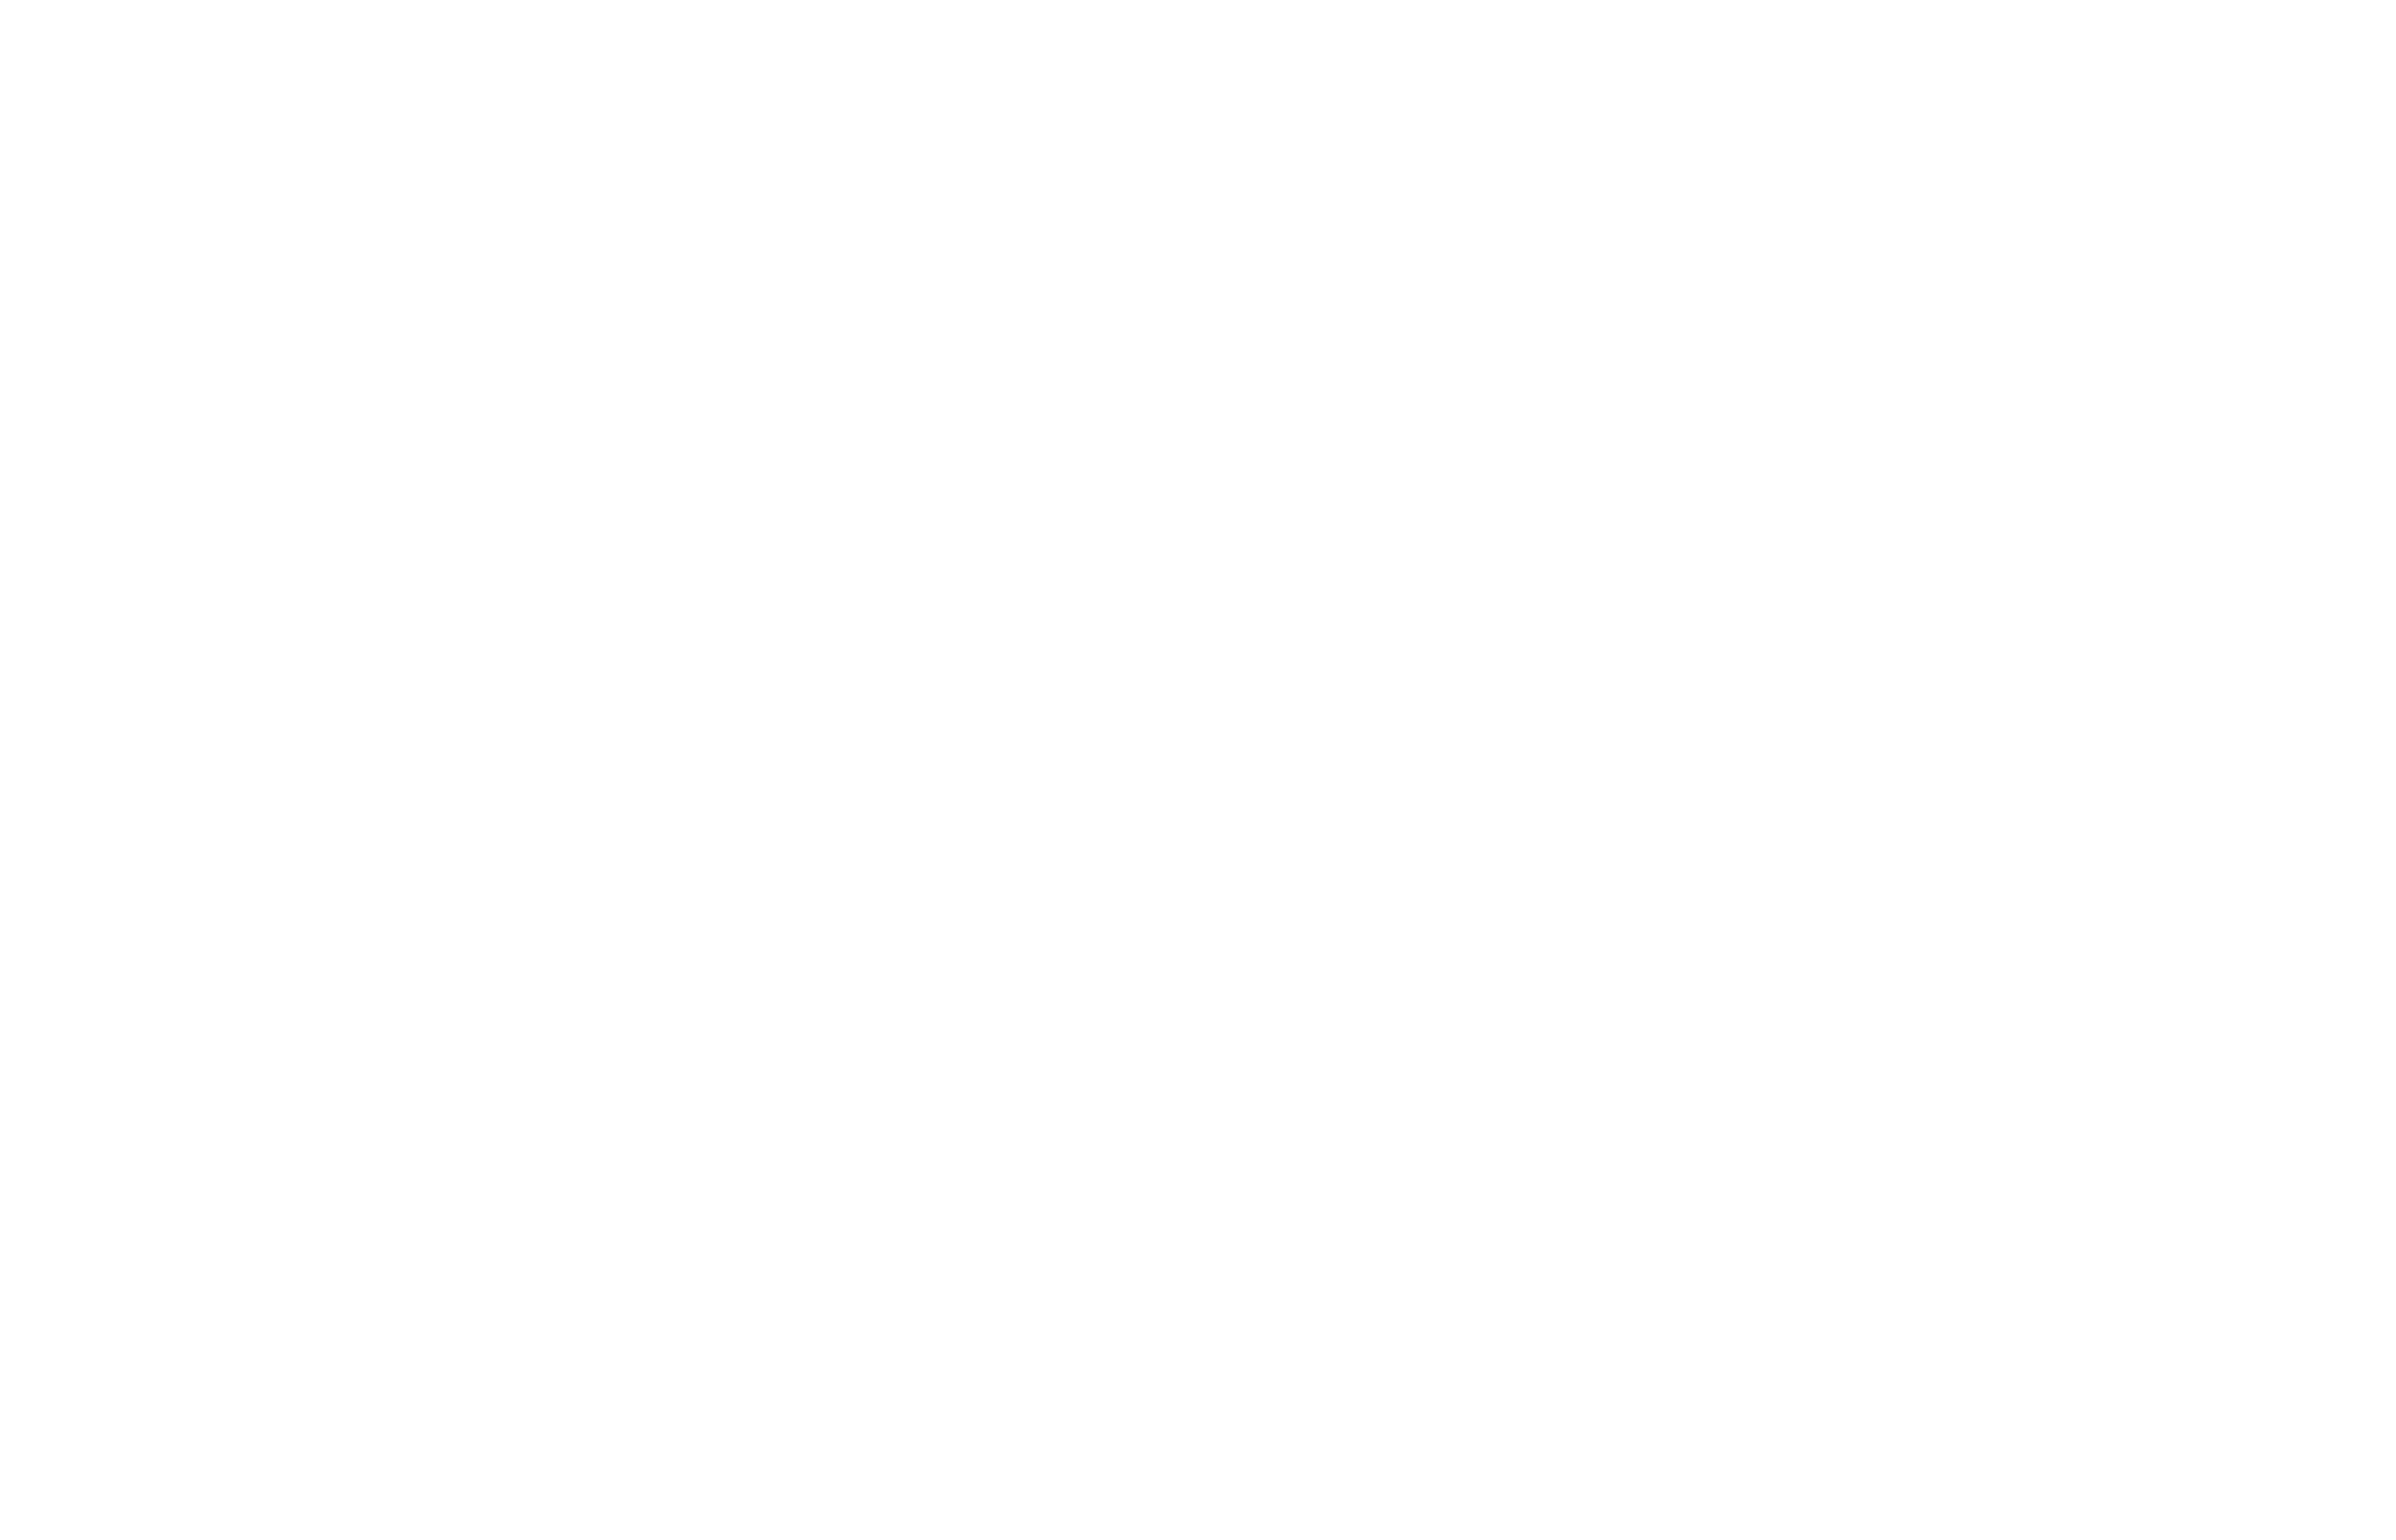 APEX Innovation